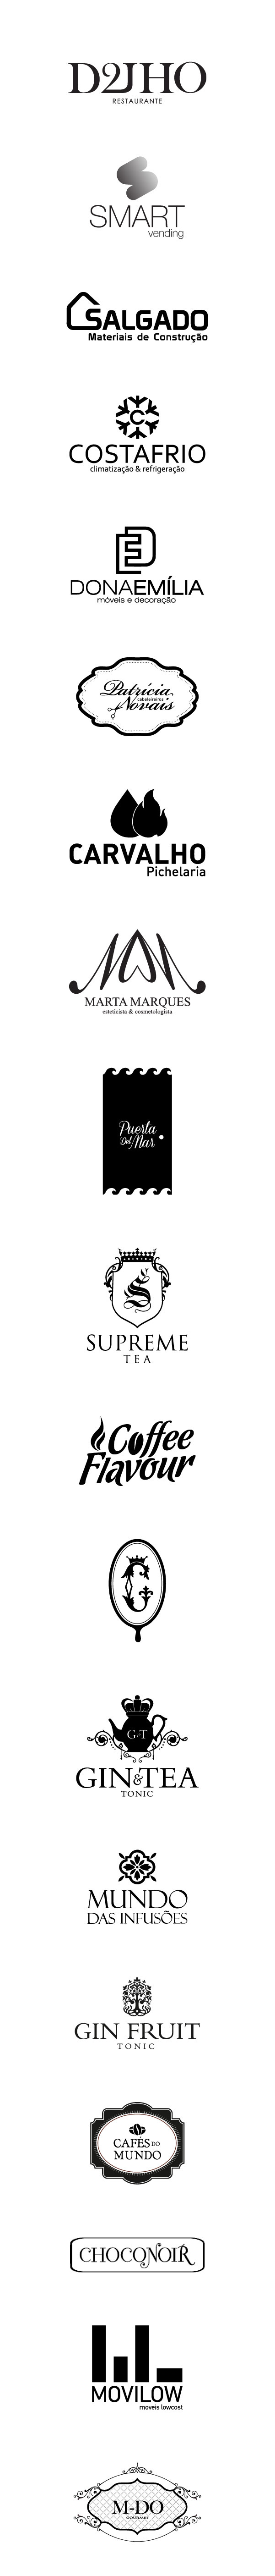 logos logotypes brands